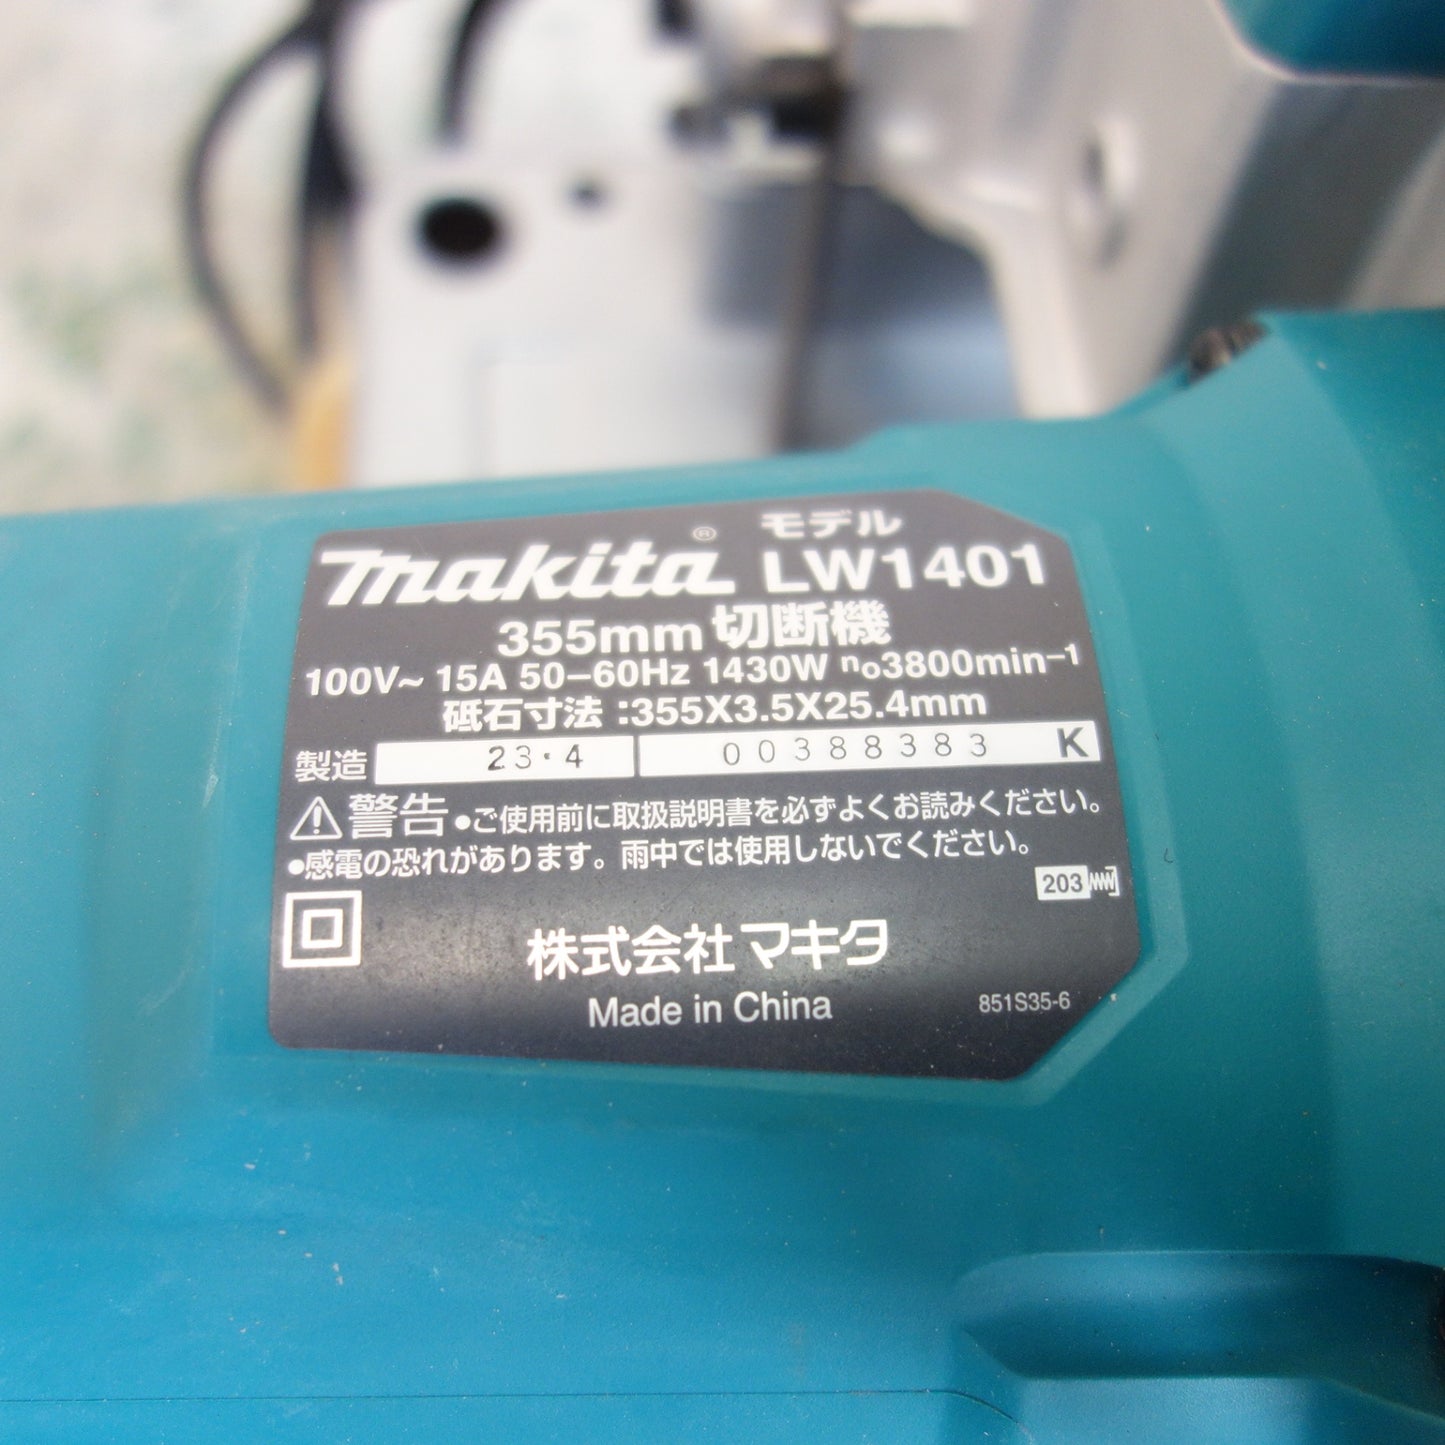 [送料無料] ☆マキタ 355mm 切断機 LW1401 電動 工具 高速 カッター makita☆